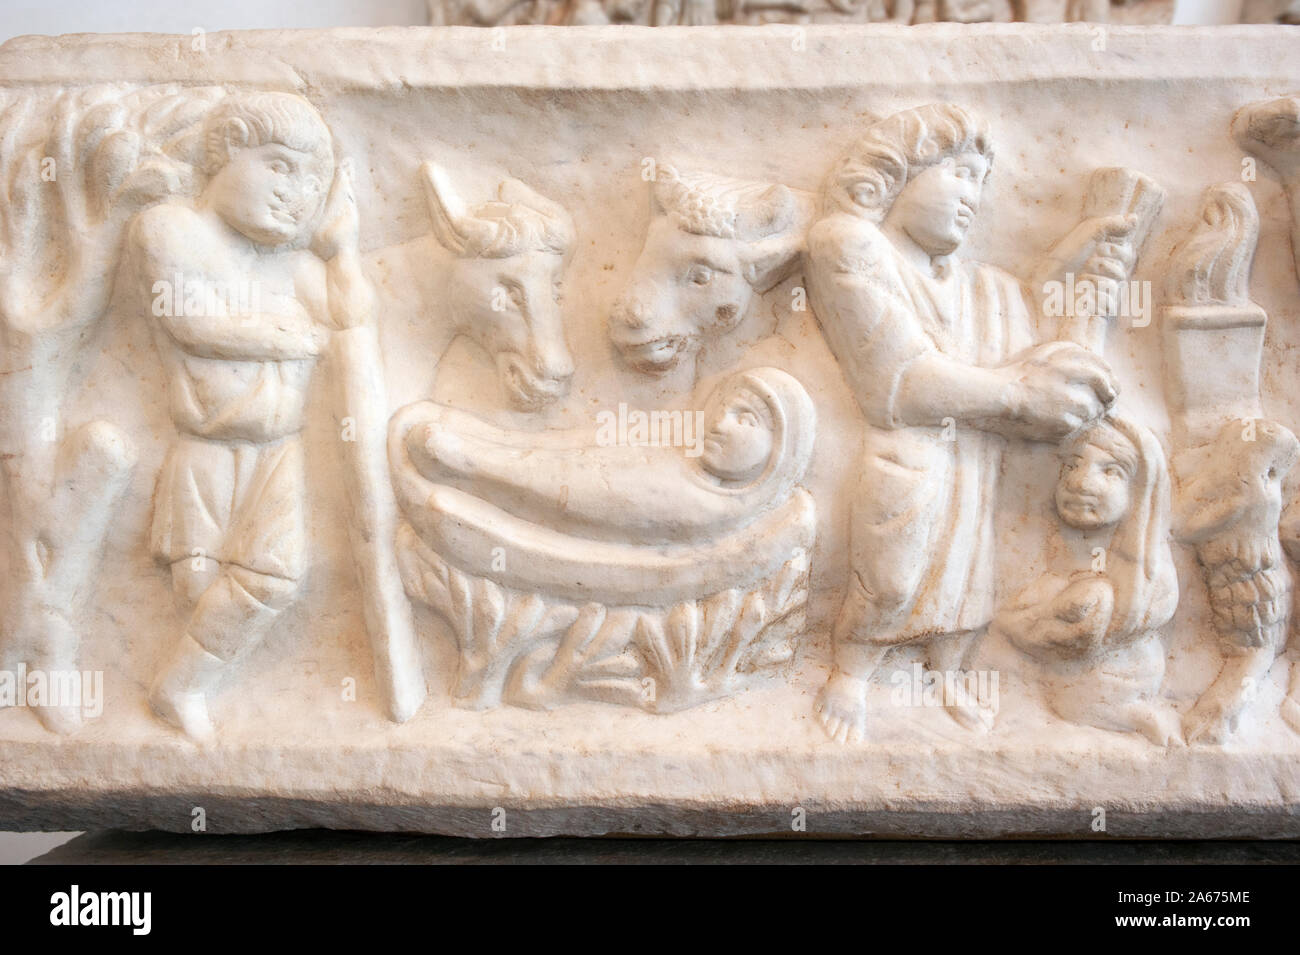 Italie, Rome, Palazzo Massimo alle terme, Musée National Romain, sarcophage chrétien précoce de Marcus Claudianus (4e siècle après JC) Banque D'Images